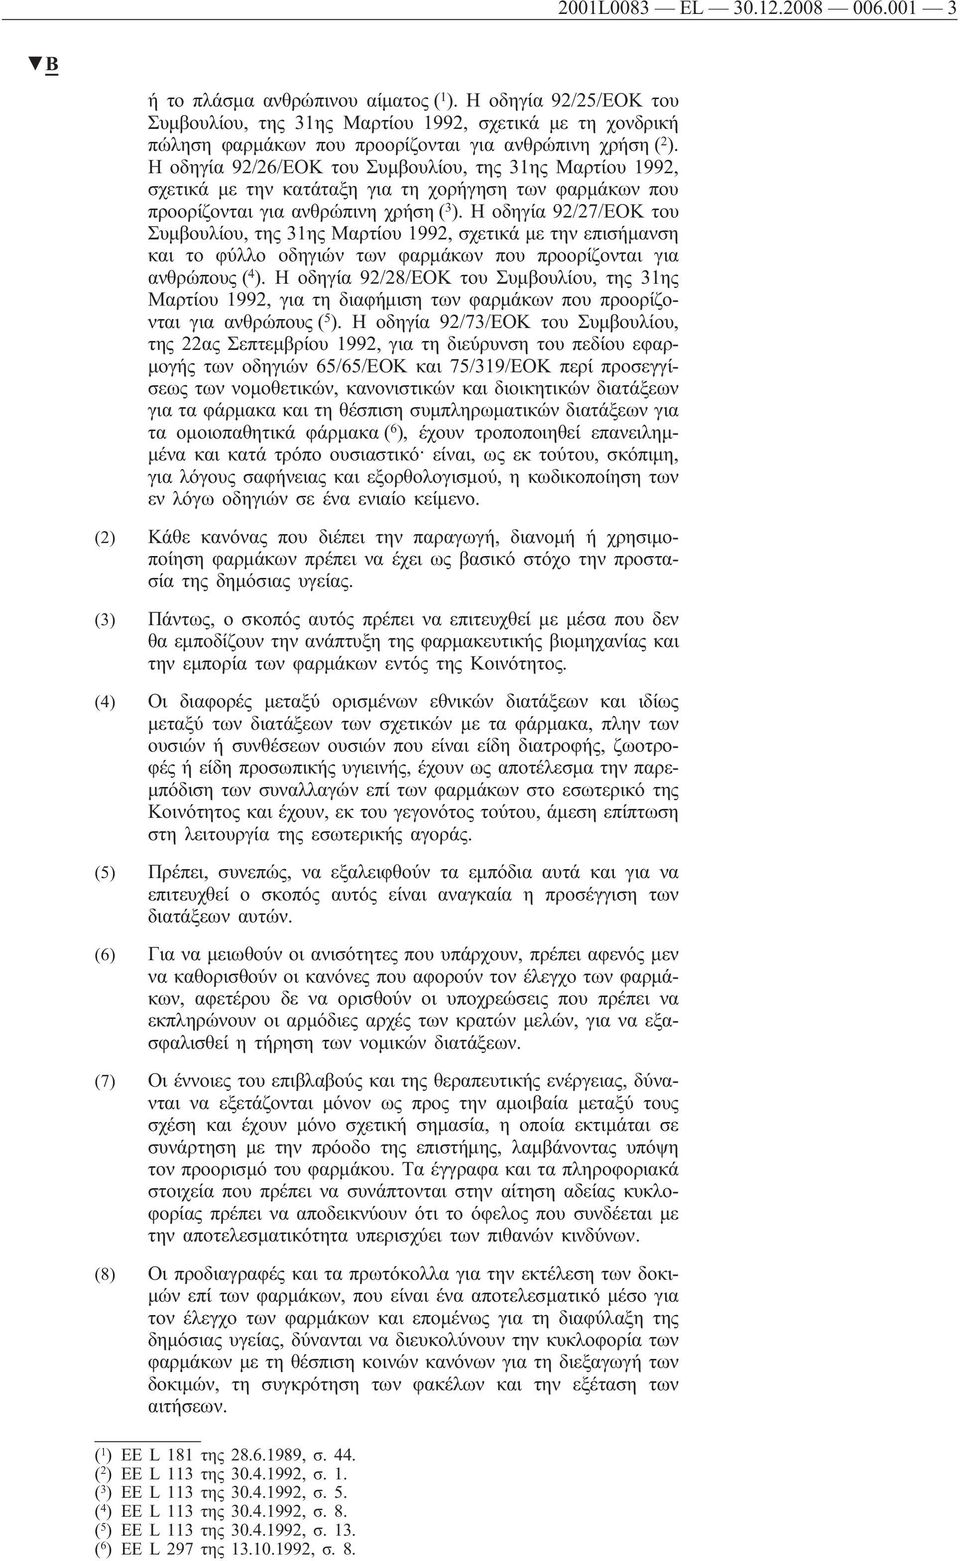 Η οδηγία 92/26/ΕΟΚ του Συμβουλίου, της 31ης Μαρτίου 1992, σχετικά με την κατάταξη για τη χορήγηση των φαρμάκων που προορίζονται για ανθρώπινη χρήση ( 3 ).